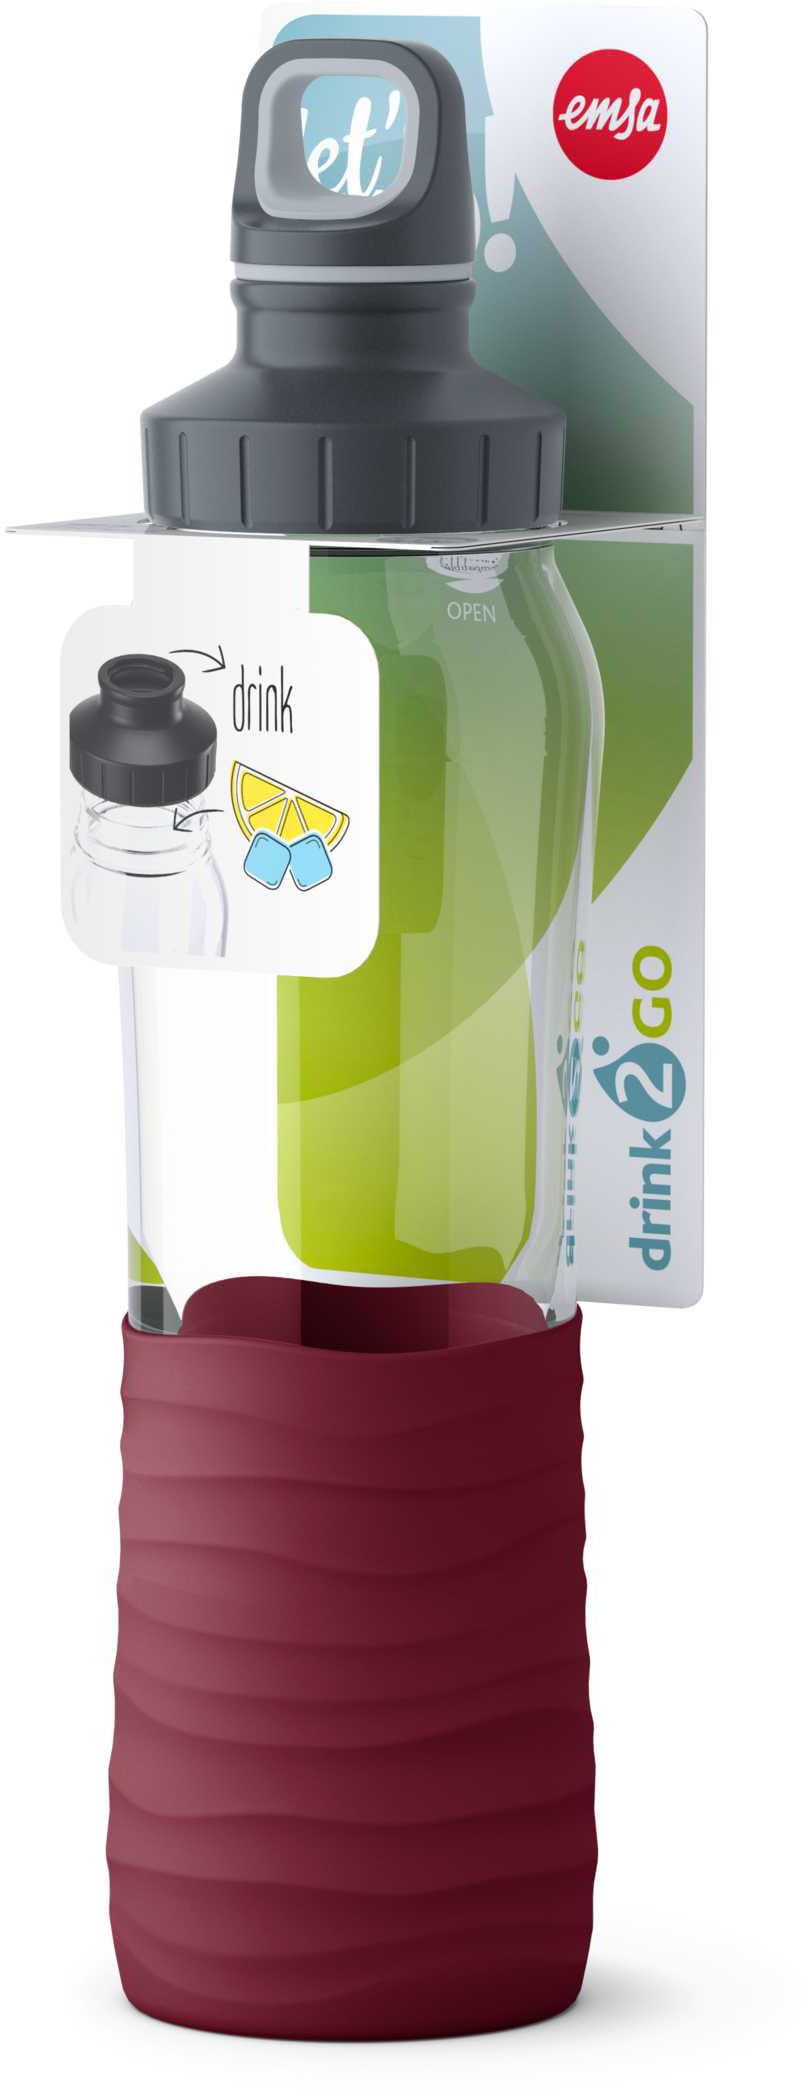 »Drink2Go«, jetzt und Liter, bestellen 0,7 Griff Fassungsvermögen: sicherer unbedenklicher Schraubverschluss, dicht, spülmaschinenfest, mit geschmacksneutral Soft-Touch, Trinkflasche Emsa 100% Glas, Trinkgenuss, 2-Wege-Öffnung, rein und